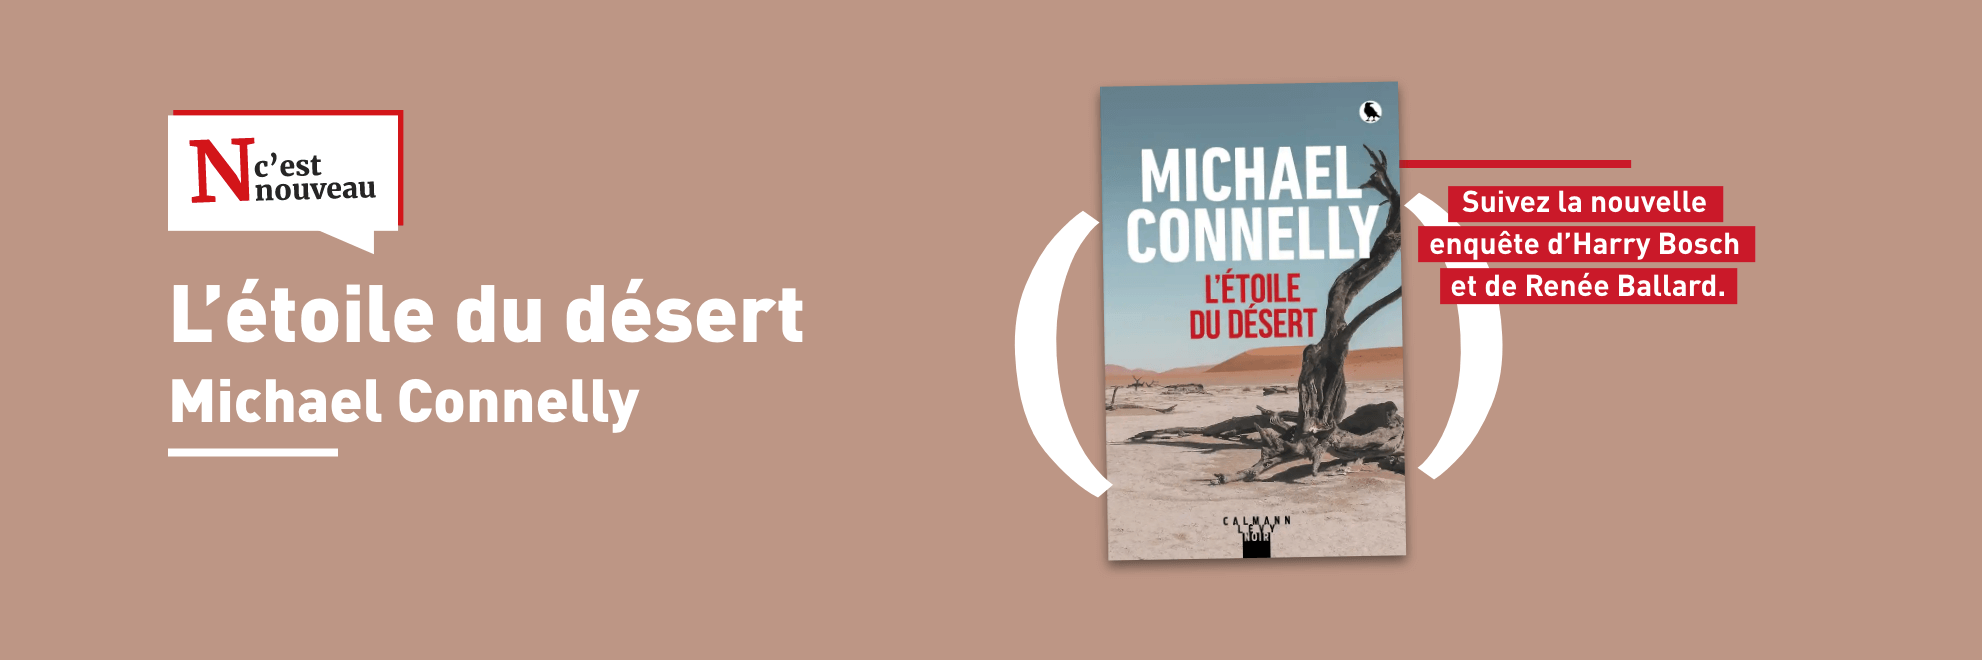 Nouveauté Michael Connelly - L'étoile du désert